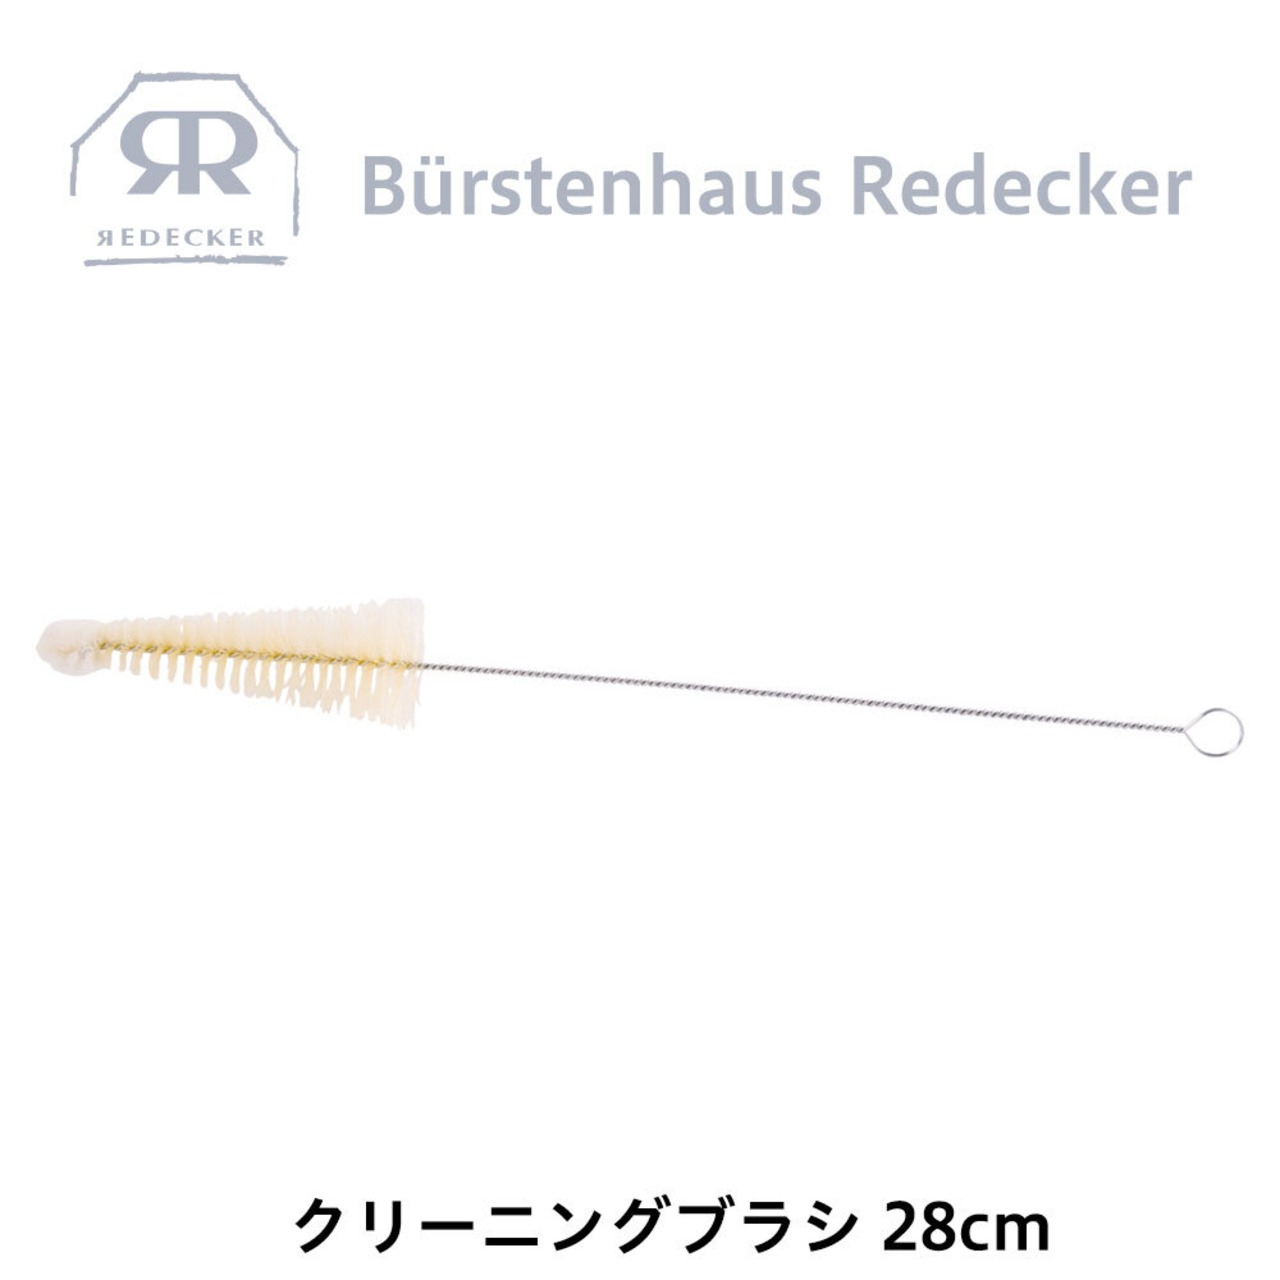 REDECKER(レデッカー) クリーニング ブラシ 28cm